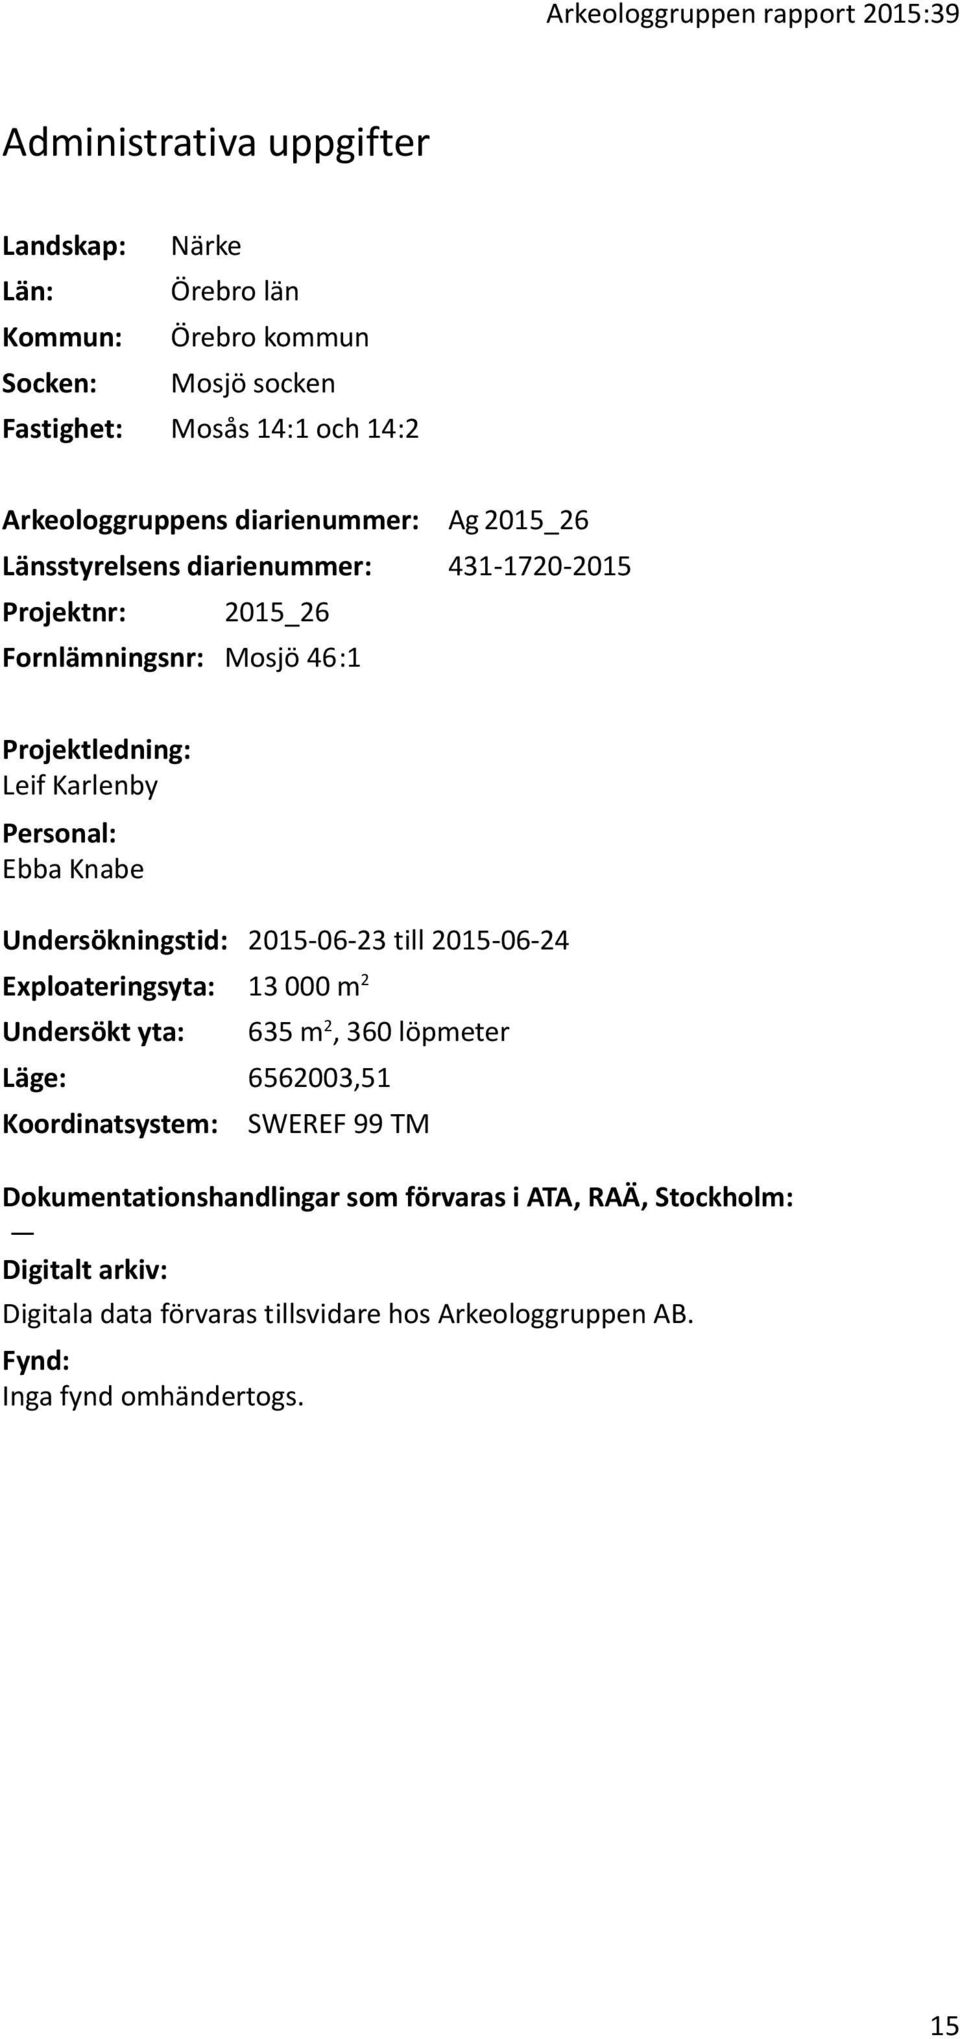 Personal: Ebba Knabe Undersökningstid: 2015-06-23 till 2015-06-24 Exploateringsyta: 13 000 m 2 Undersökt yta: 635 m 2, 360 löpmeter Läge: 6562003,51 Koordinatsystem: